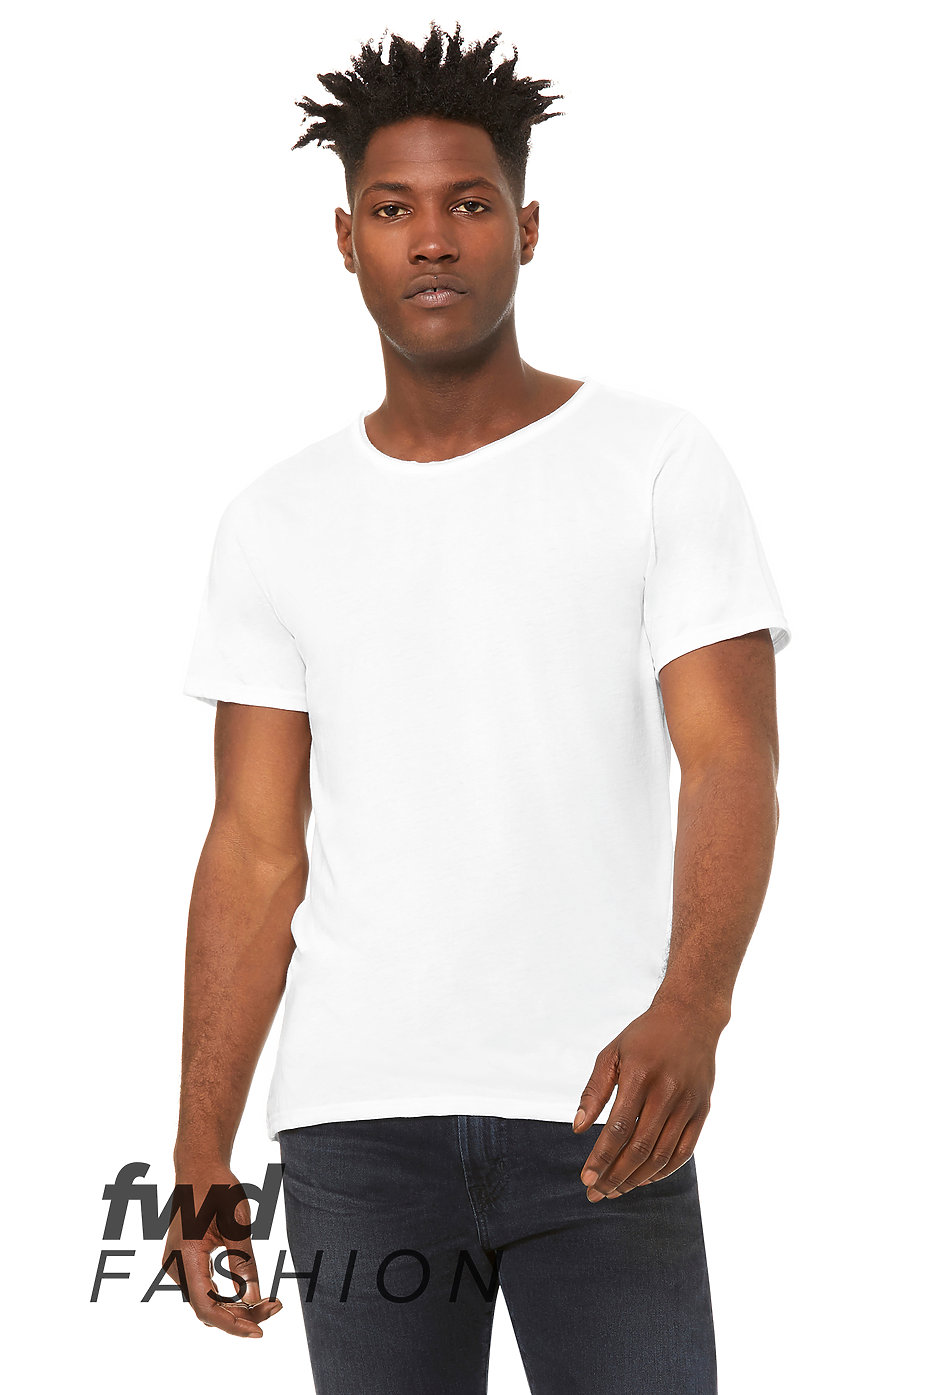 Paradox viering rekenkundig Tri Blend T Shirts | Unisex Tri Blend Shirt | Mens Wholesale Clothing |  Fast Fashion | BELLA+CANVAS ®